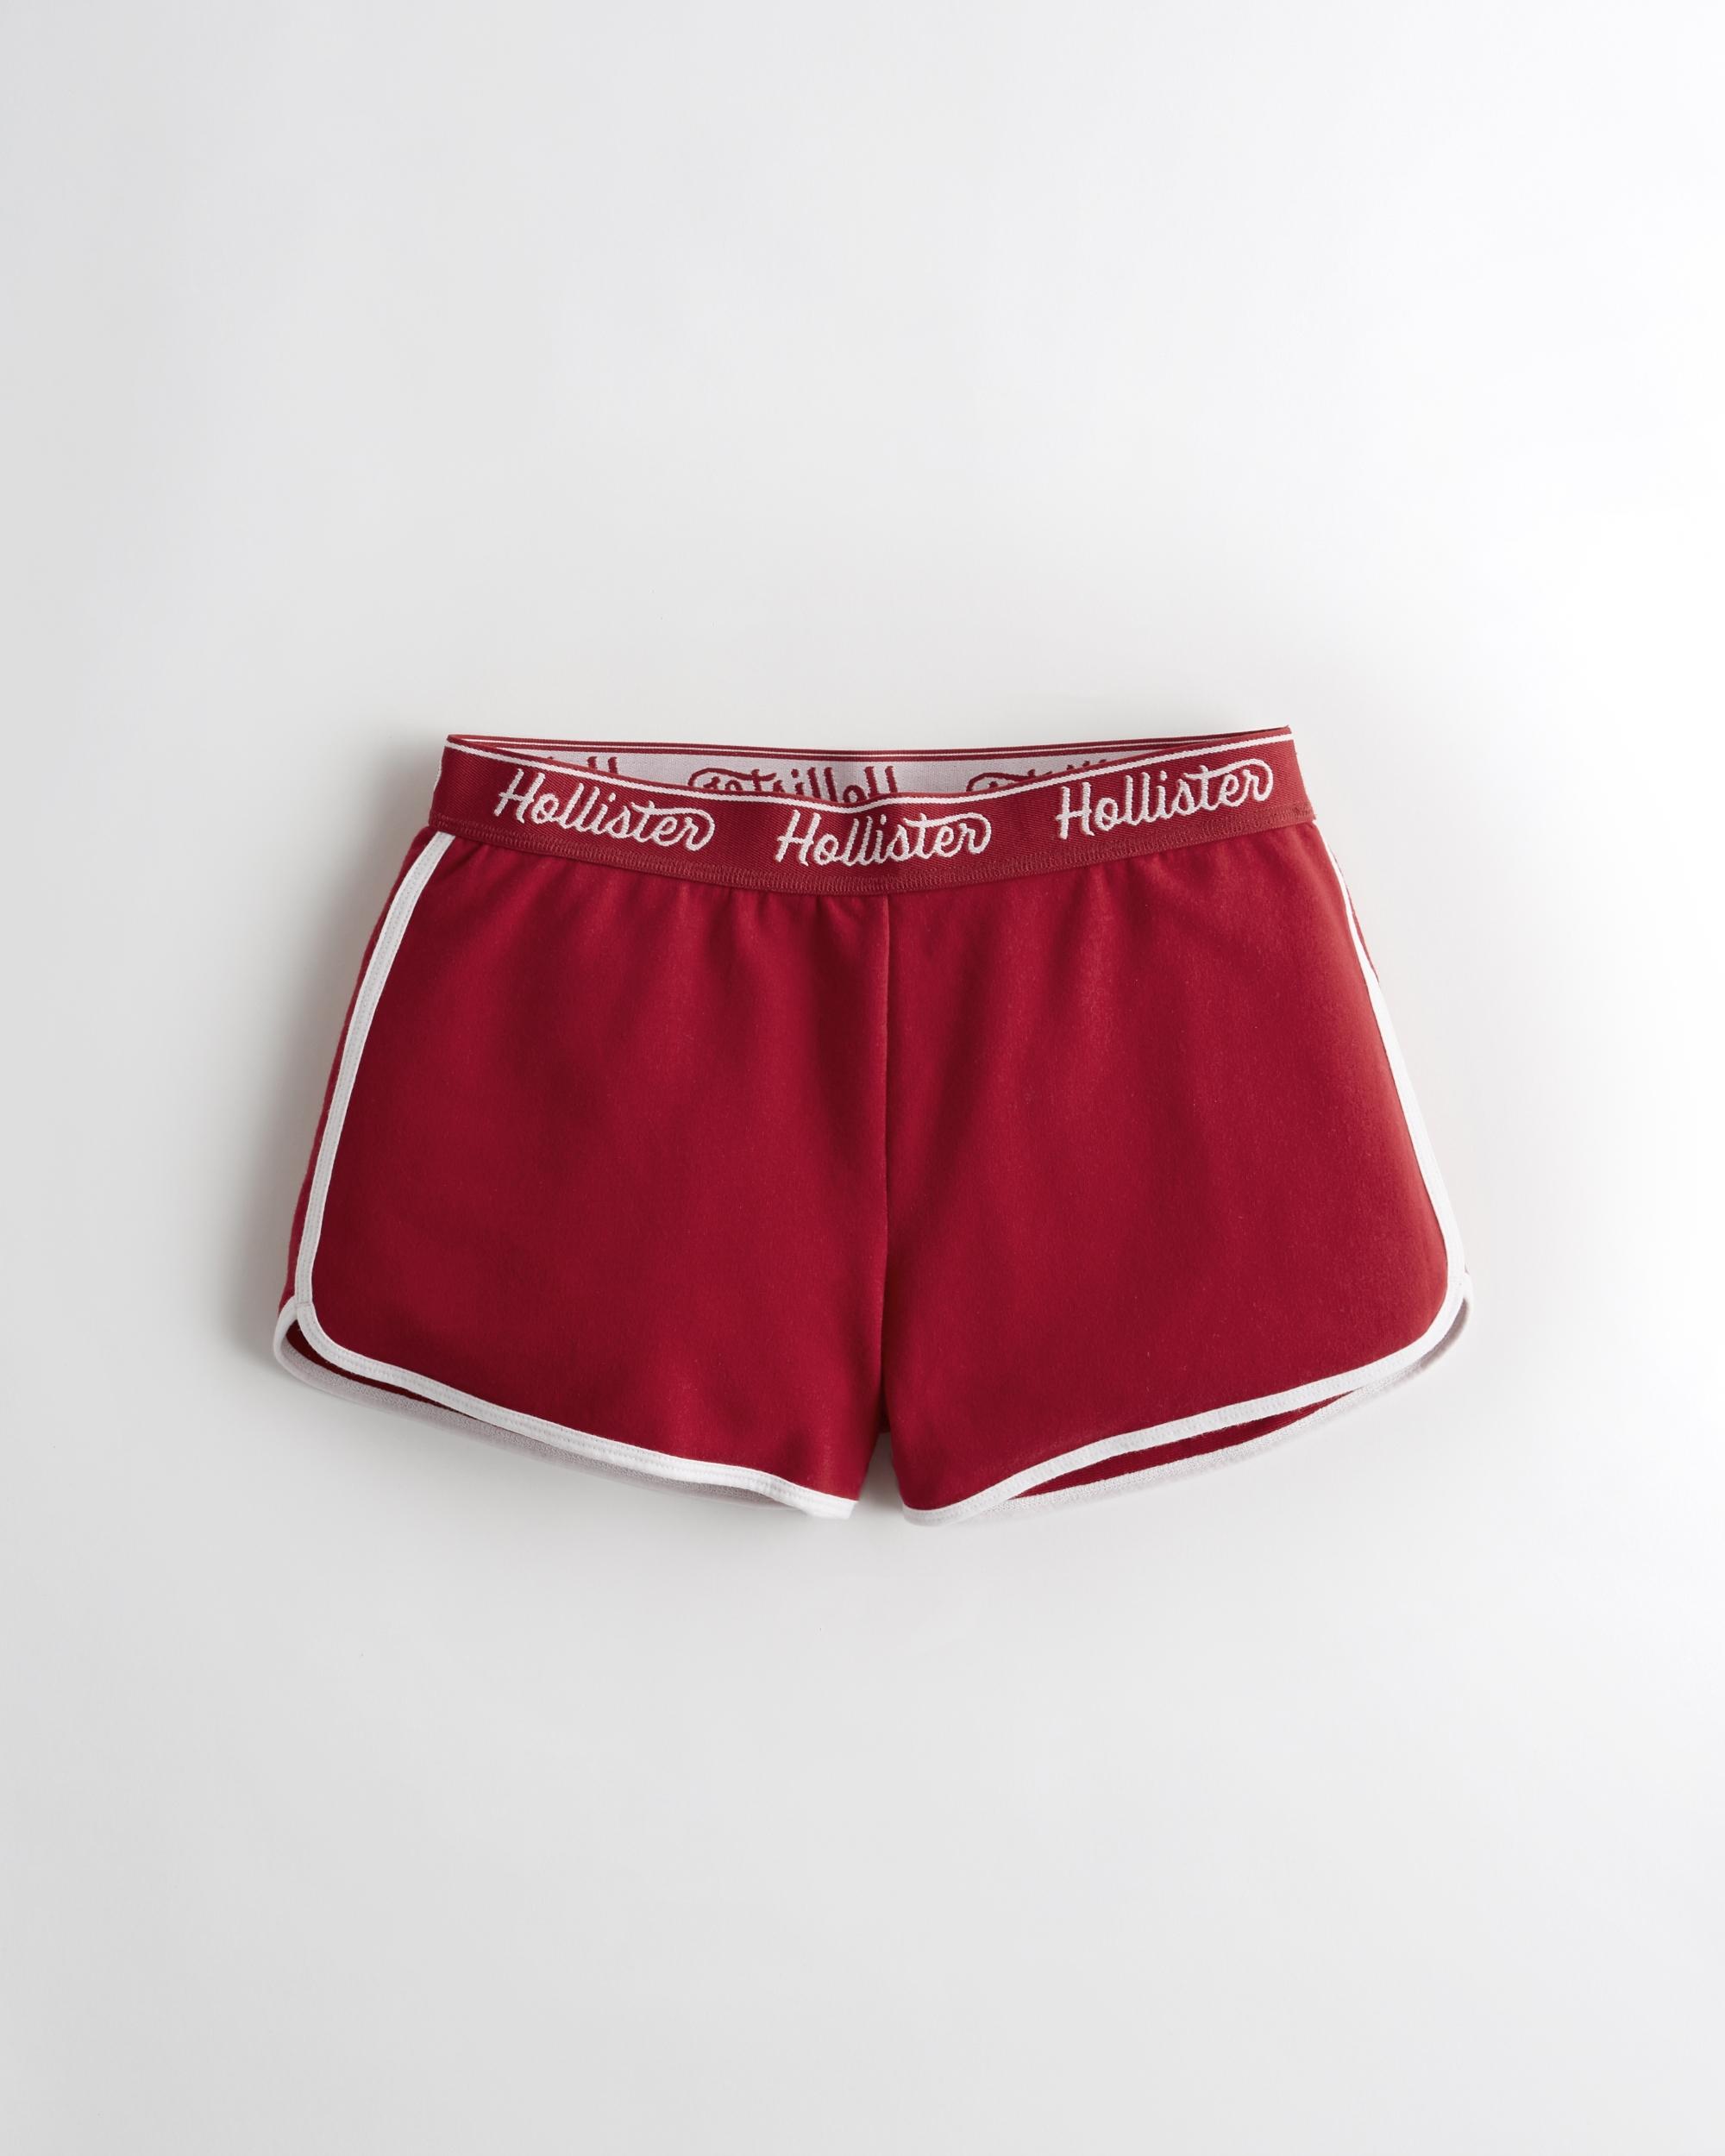 hollister women's shorts